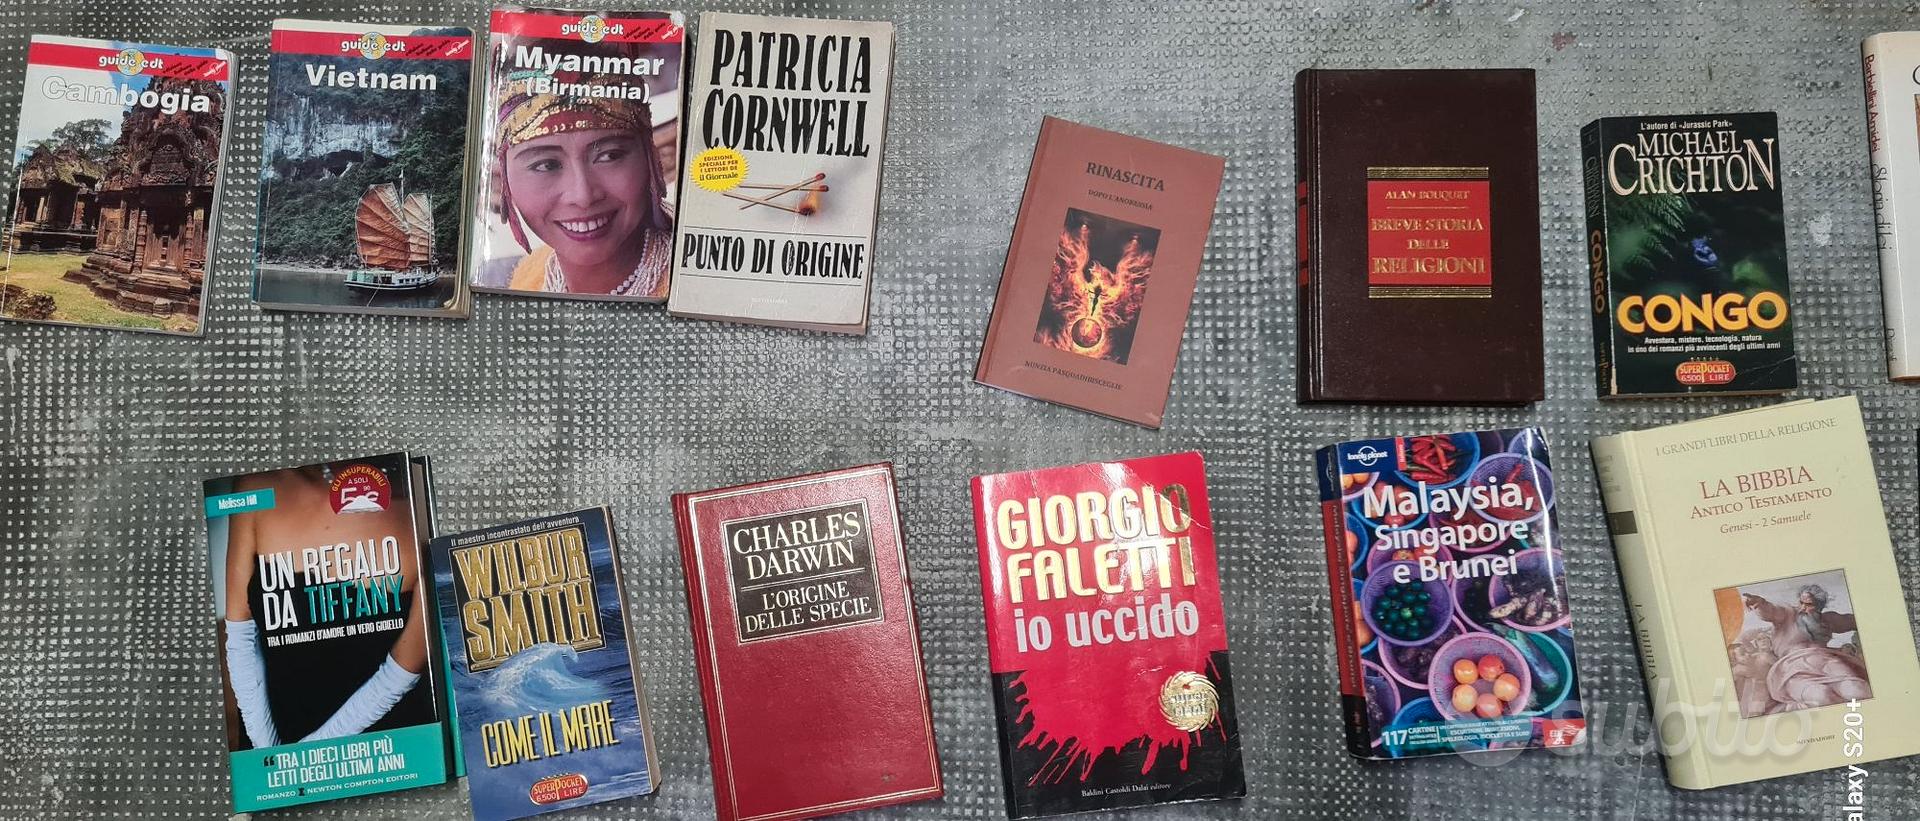 Libri a 1 euro cad - Libri e Riviste In vendita a Firenze